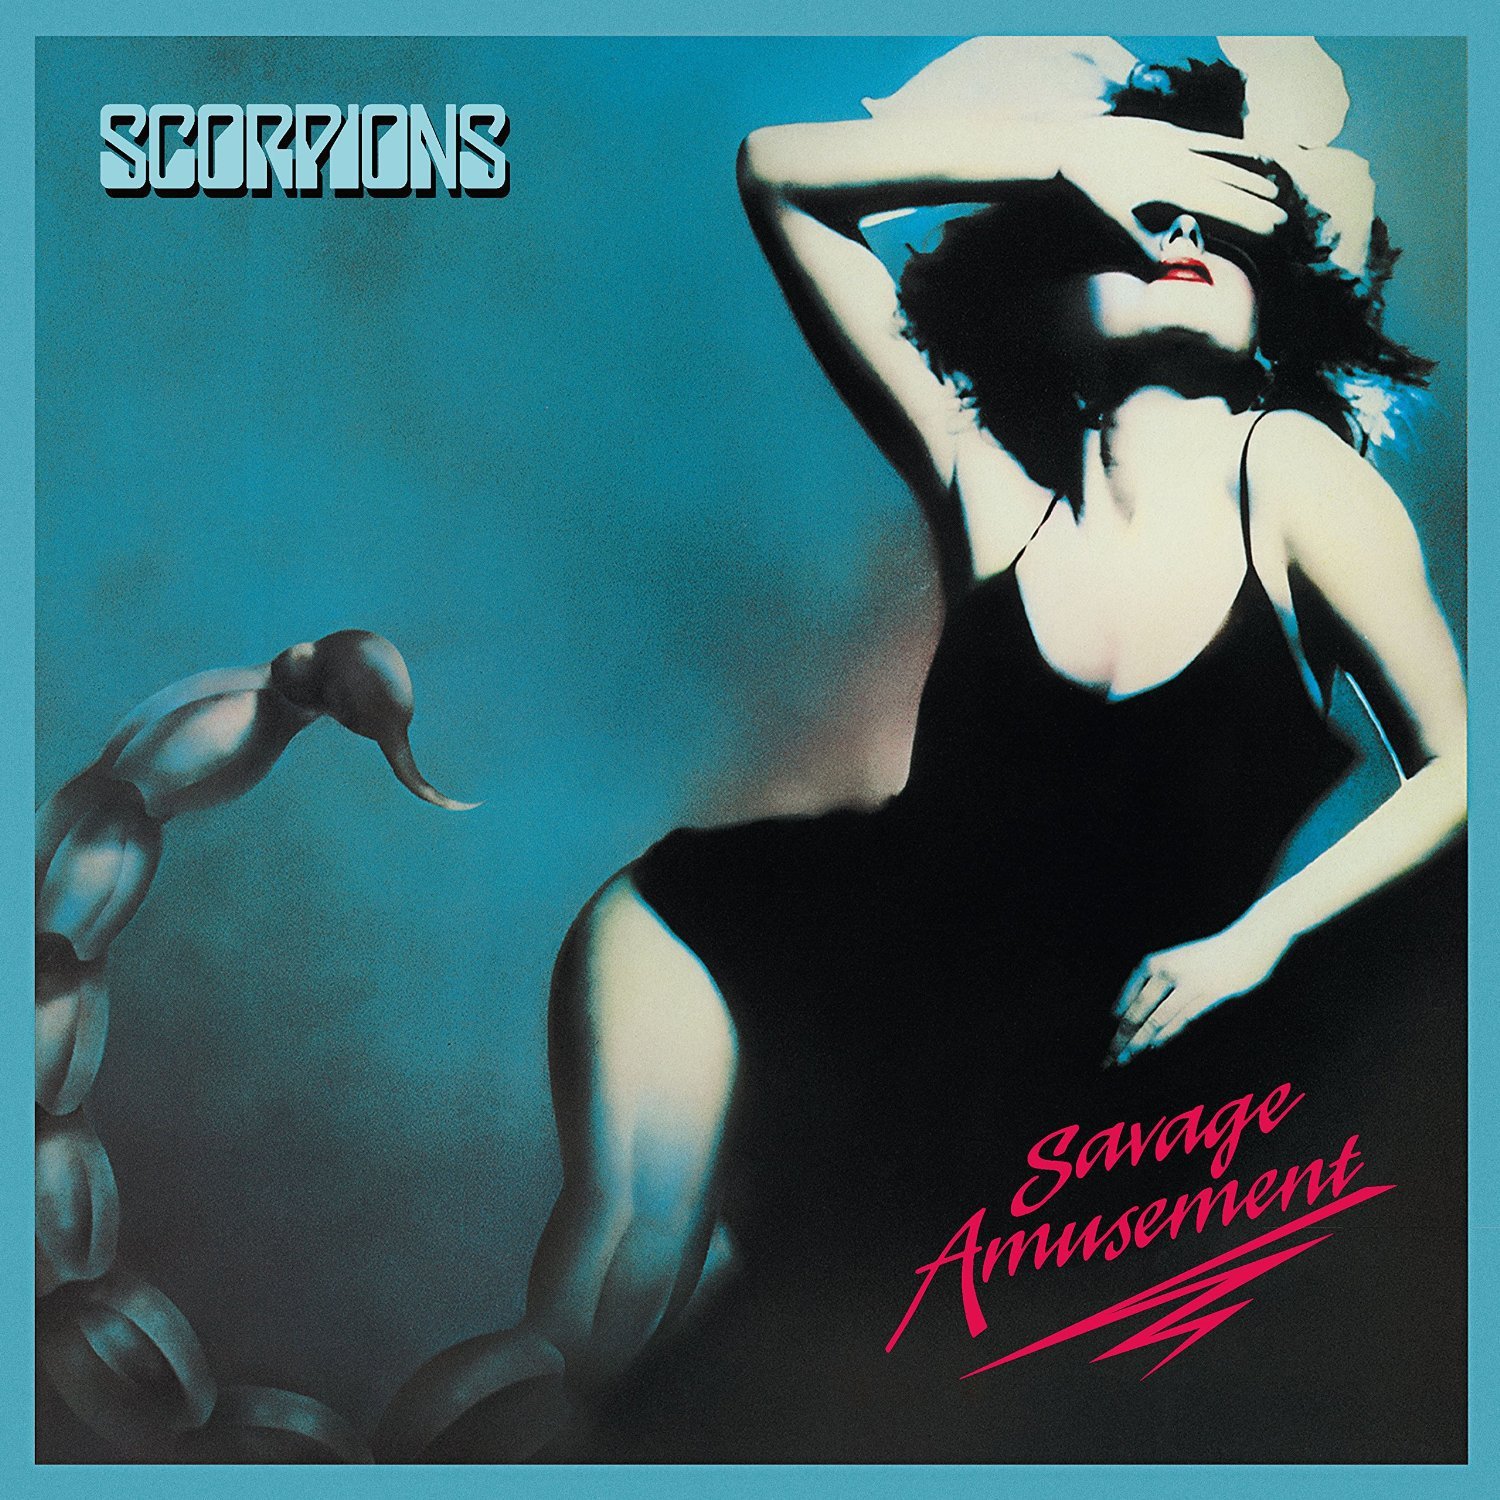 Discografía seleccionada: Scorpions (Top 10; actualizado en 2018)